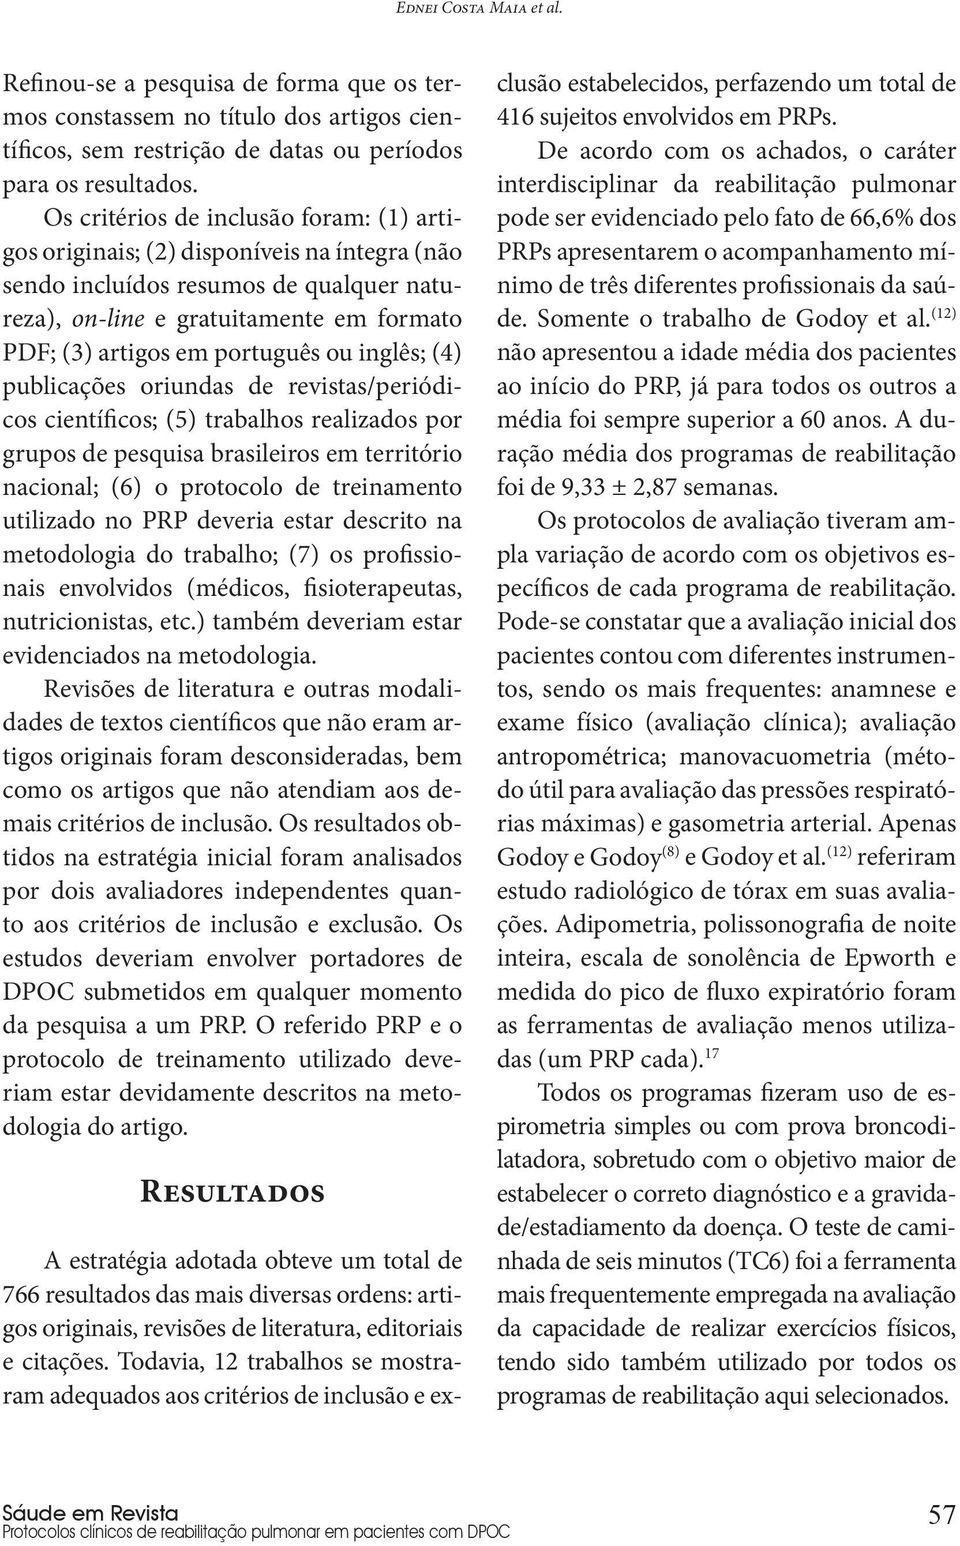 ou inglês; (4) publicações oriundas de revistas/periódicos científicos; (5) trabalhos realizados por grupos de pesquisa brasileiros em território nacional; (6) o protocolo de treinamento utilizado no